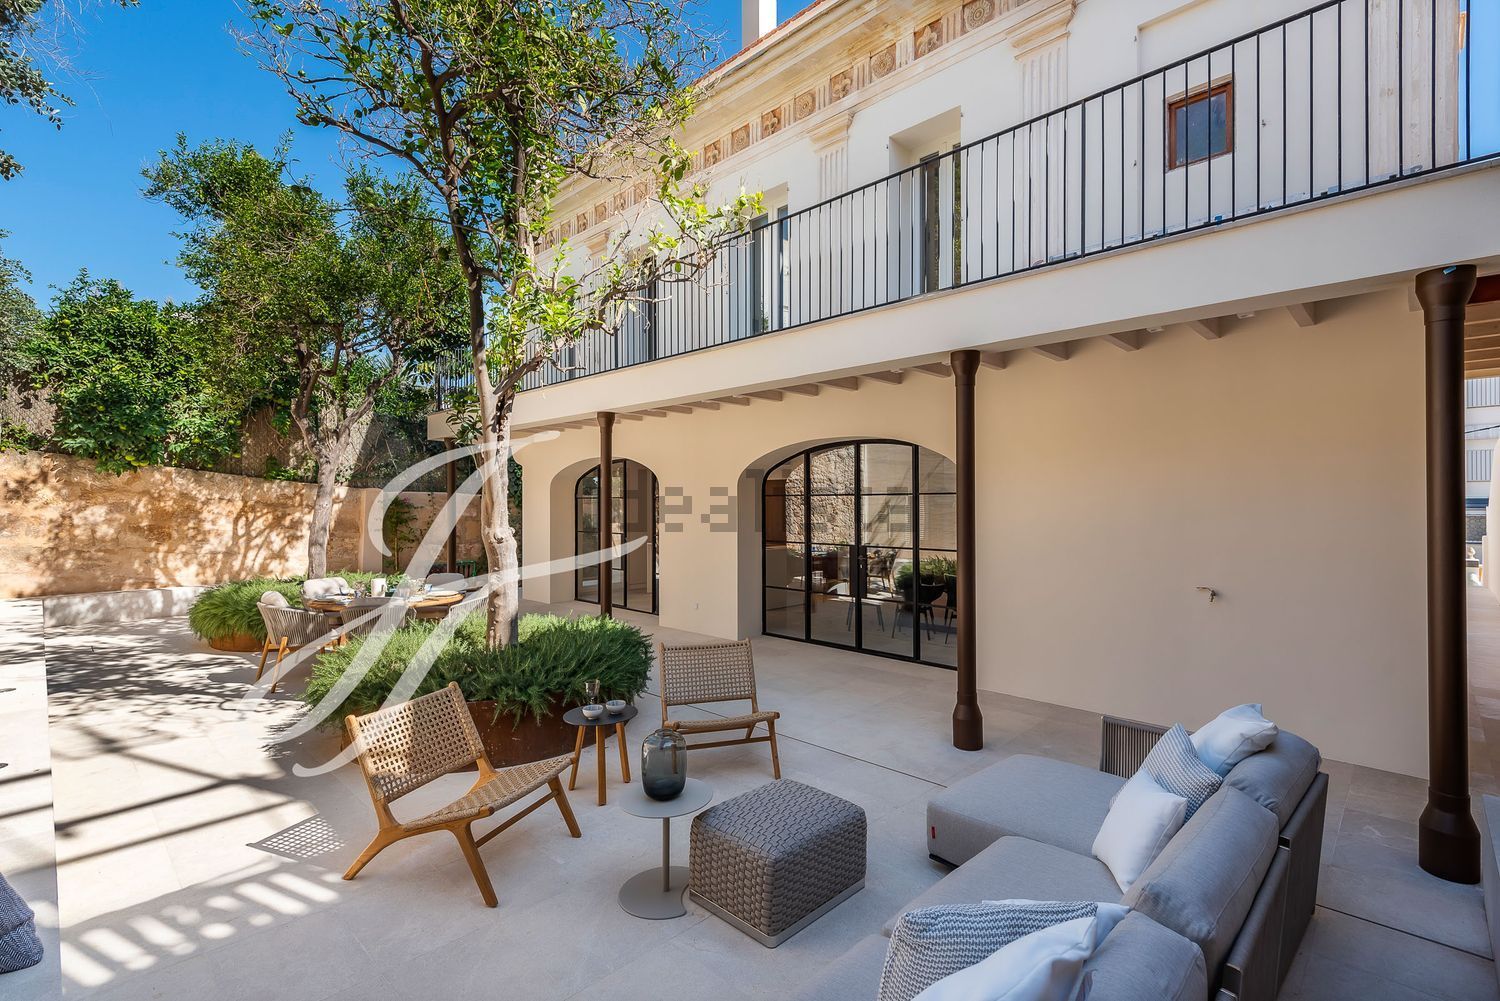 FOTOS: Sale a la venta por 3,5 milllones la casa de Palma en la que vivió Santiago Rusiñol